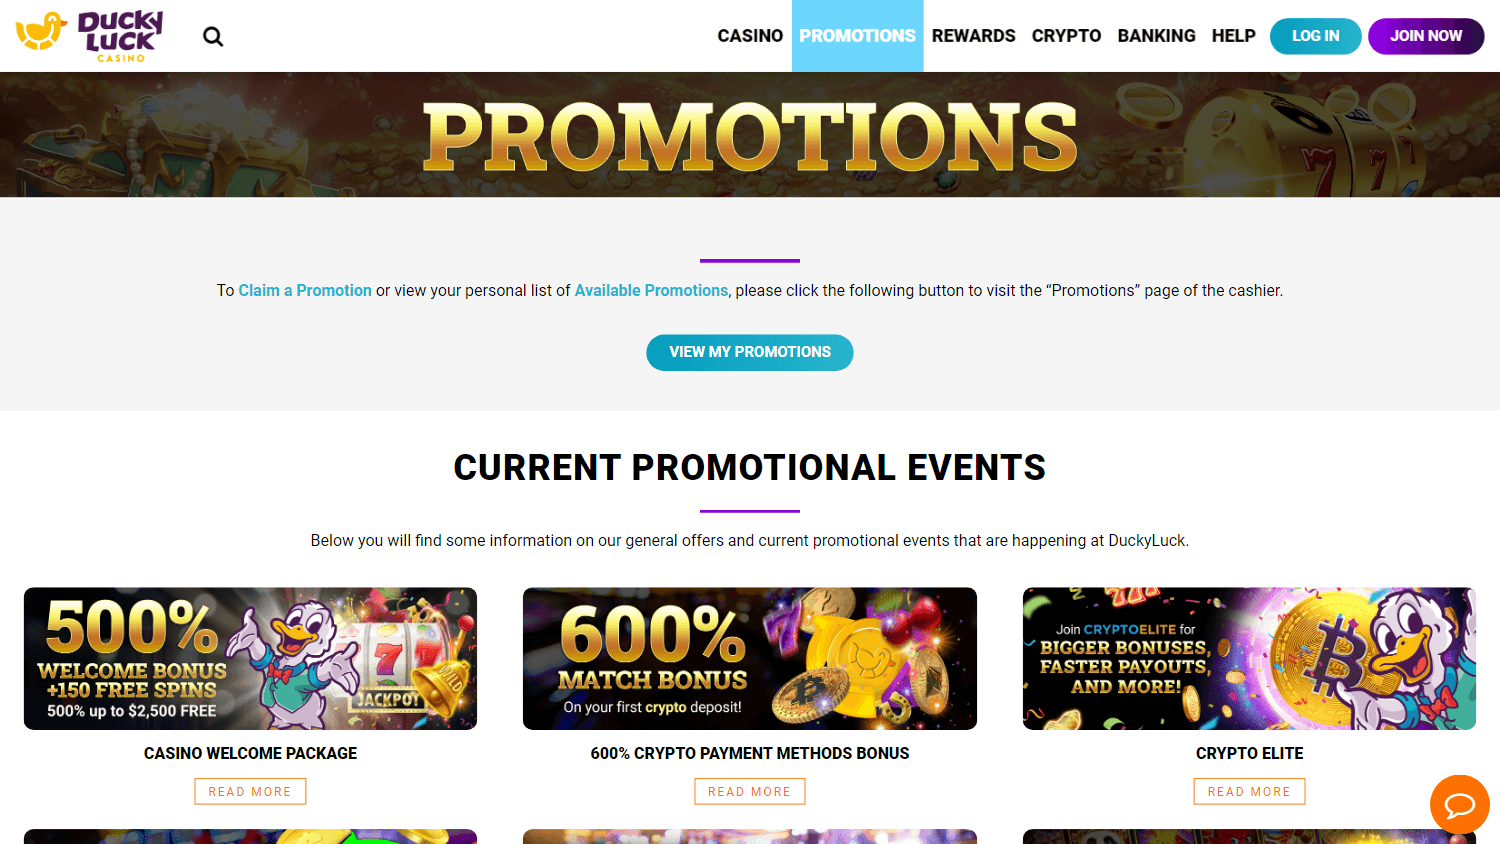 duckyluck_casino_promotions_desktop